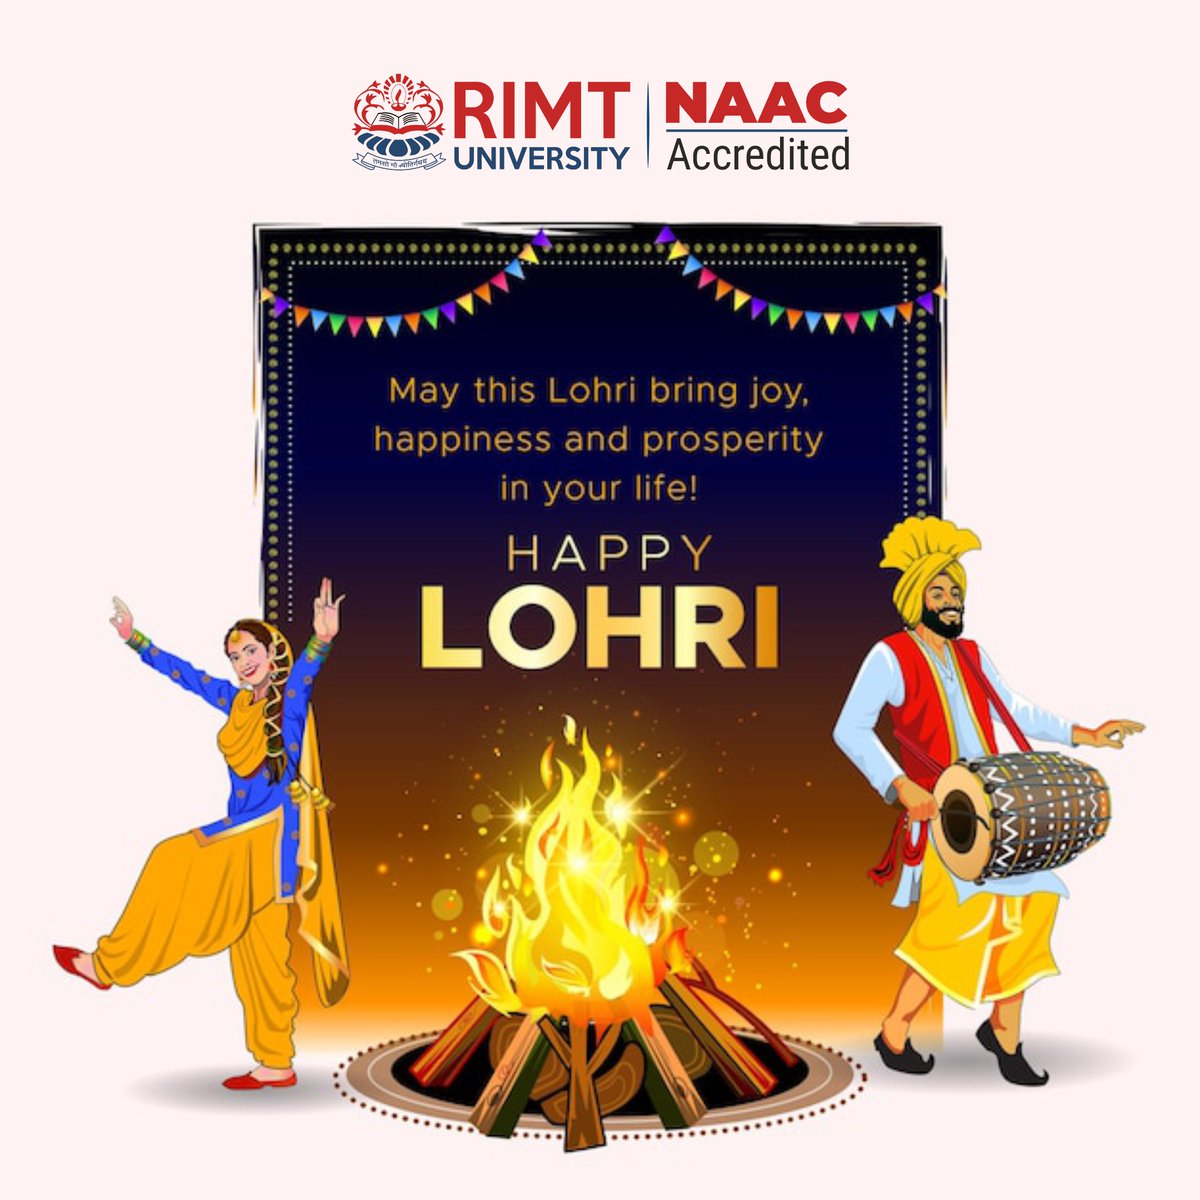 RIMT University Sending heartfelt wishes on this joyous Lohri celebration! May the radiant bonfire illuminate your life with prosperity, happiness, and success. Happy Lohri! 
#RIMTUniversity #LohriFestivities #FestiveSpirit